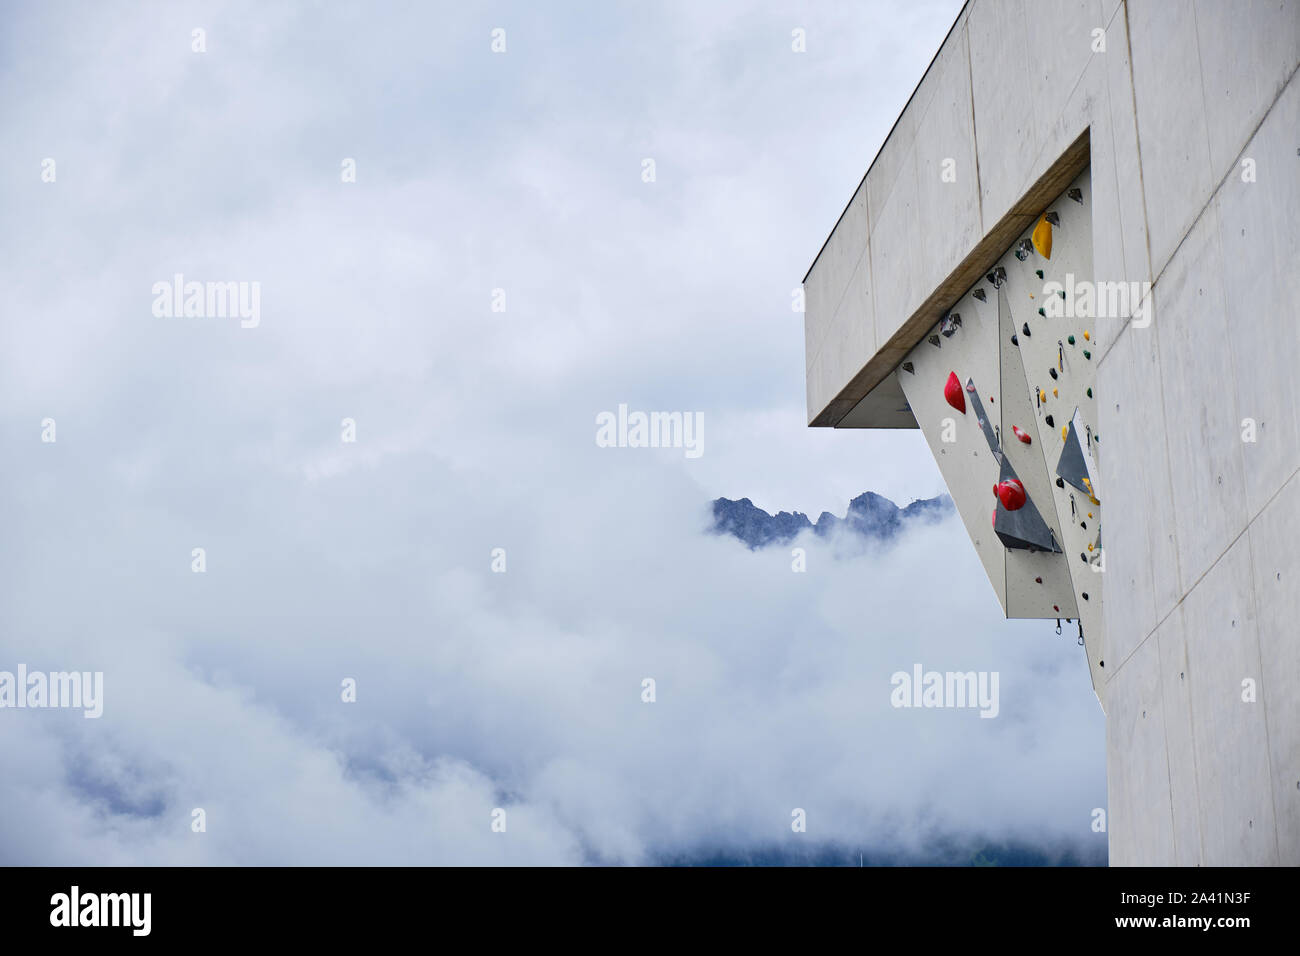 Suspensiones de plástico alto muro de escalada de plomo en Kletterzentrum Innsbruck (Centro de escalada) de Innsbruck, Austria, con nubes en el fondo, cubriendo el Foto de stock